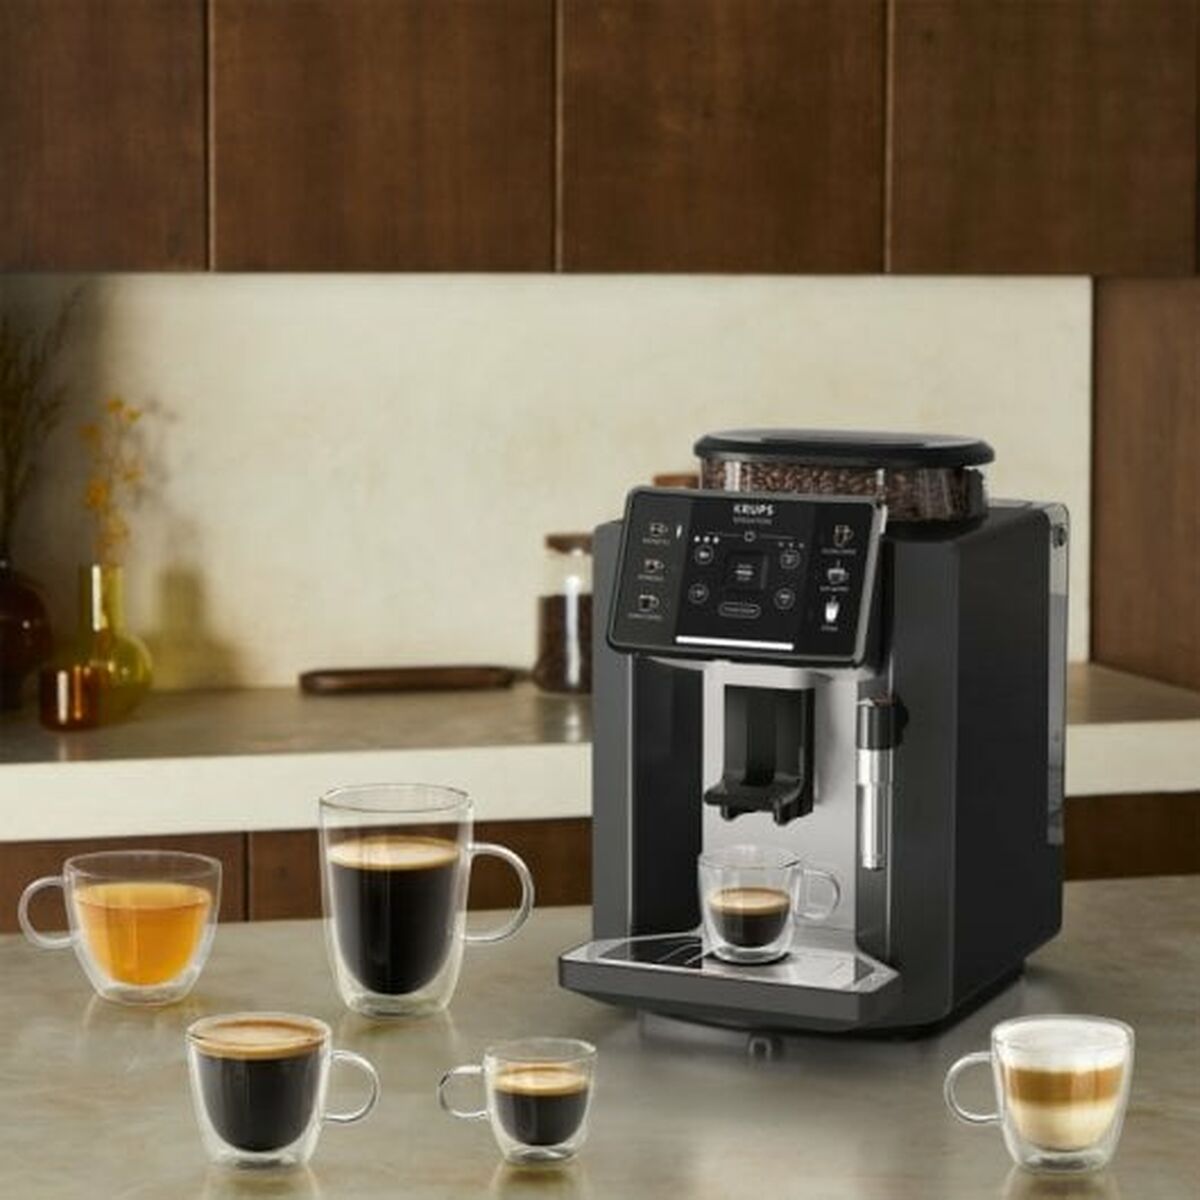 Суперавтоматическая кофеварка Krups C10 EA910A10 Чёрный 1450 W 15 bar 1,7 L